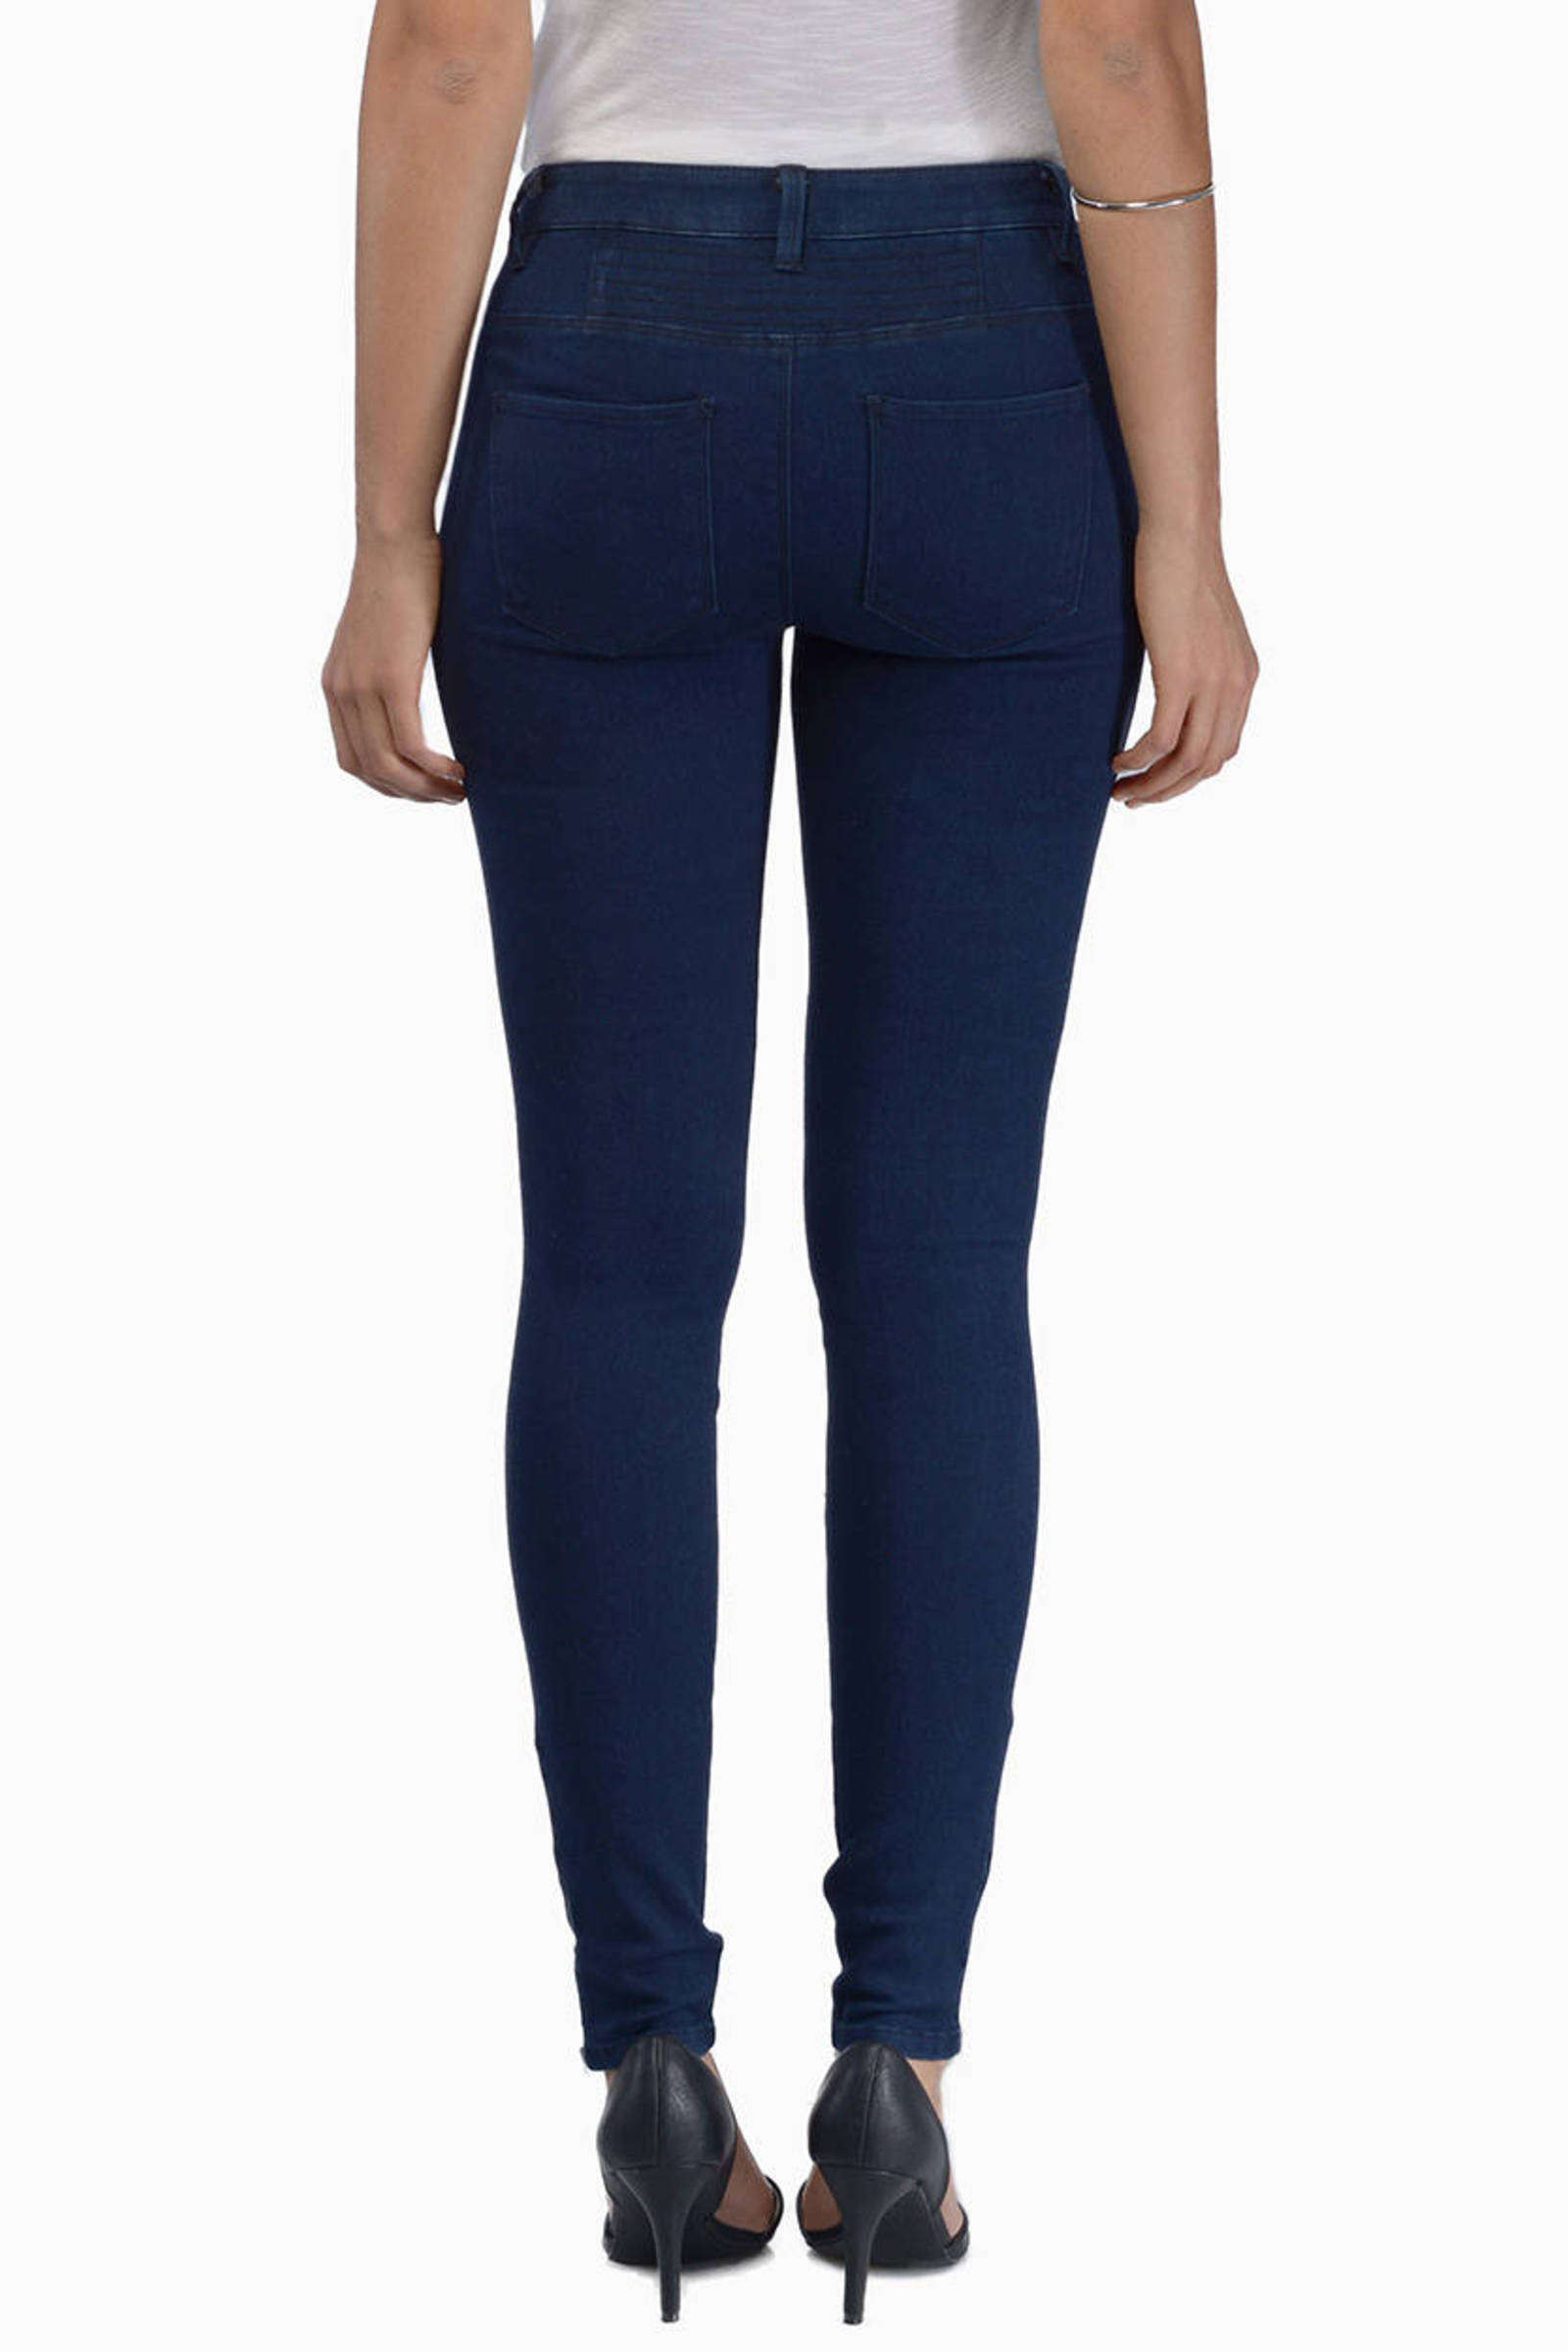 Alina Jeans in Navy - $25 | Tobi US